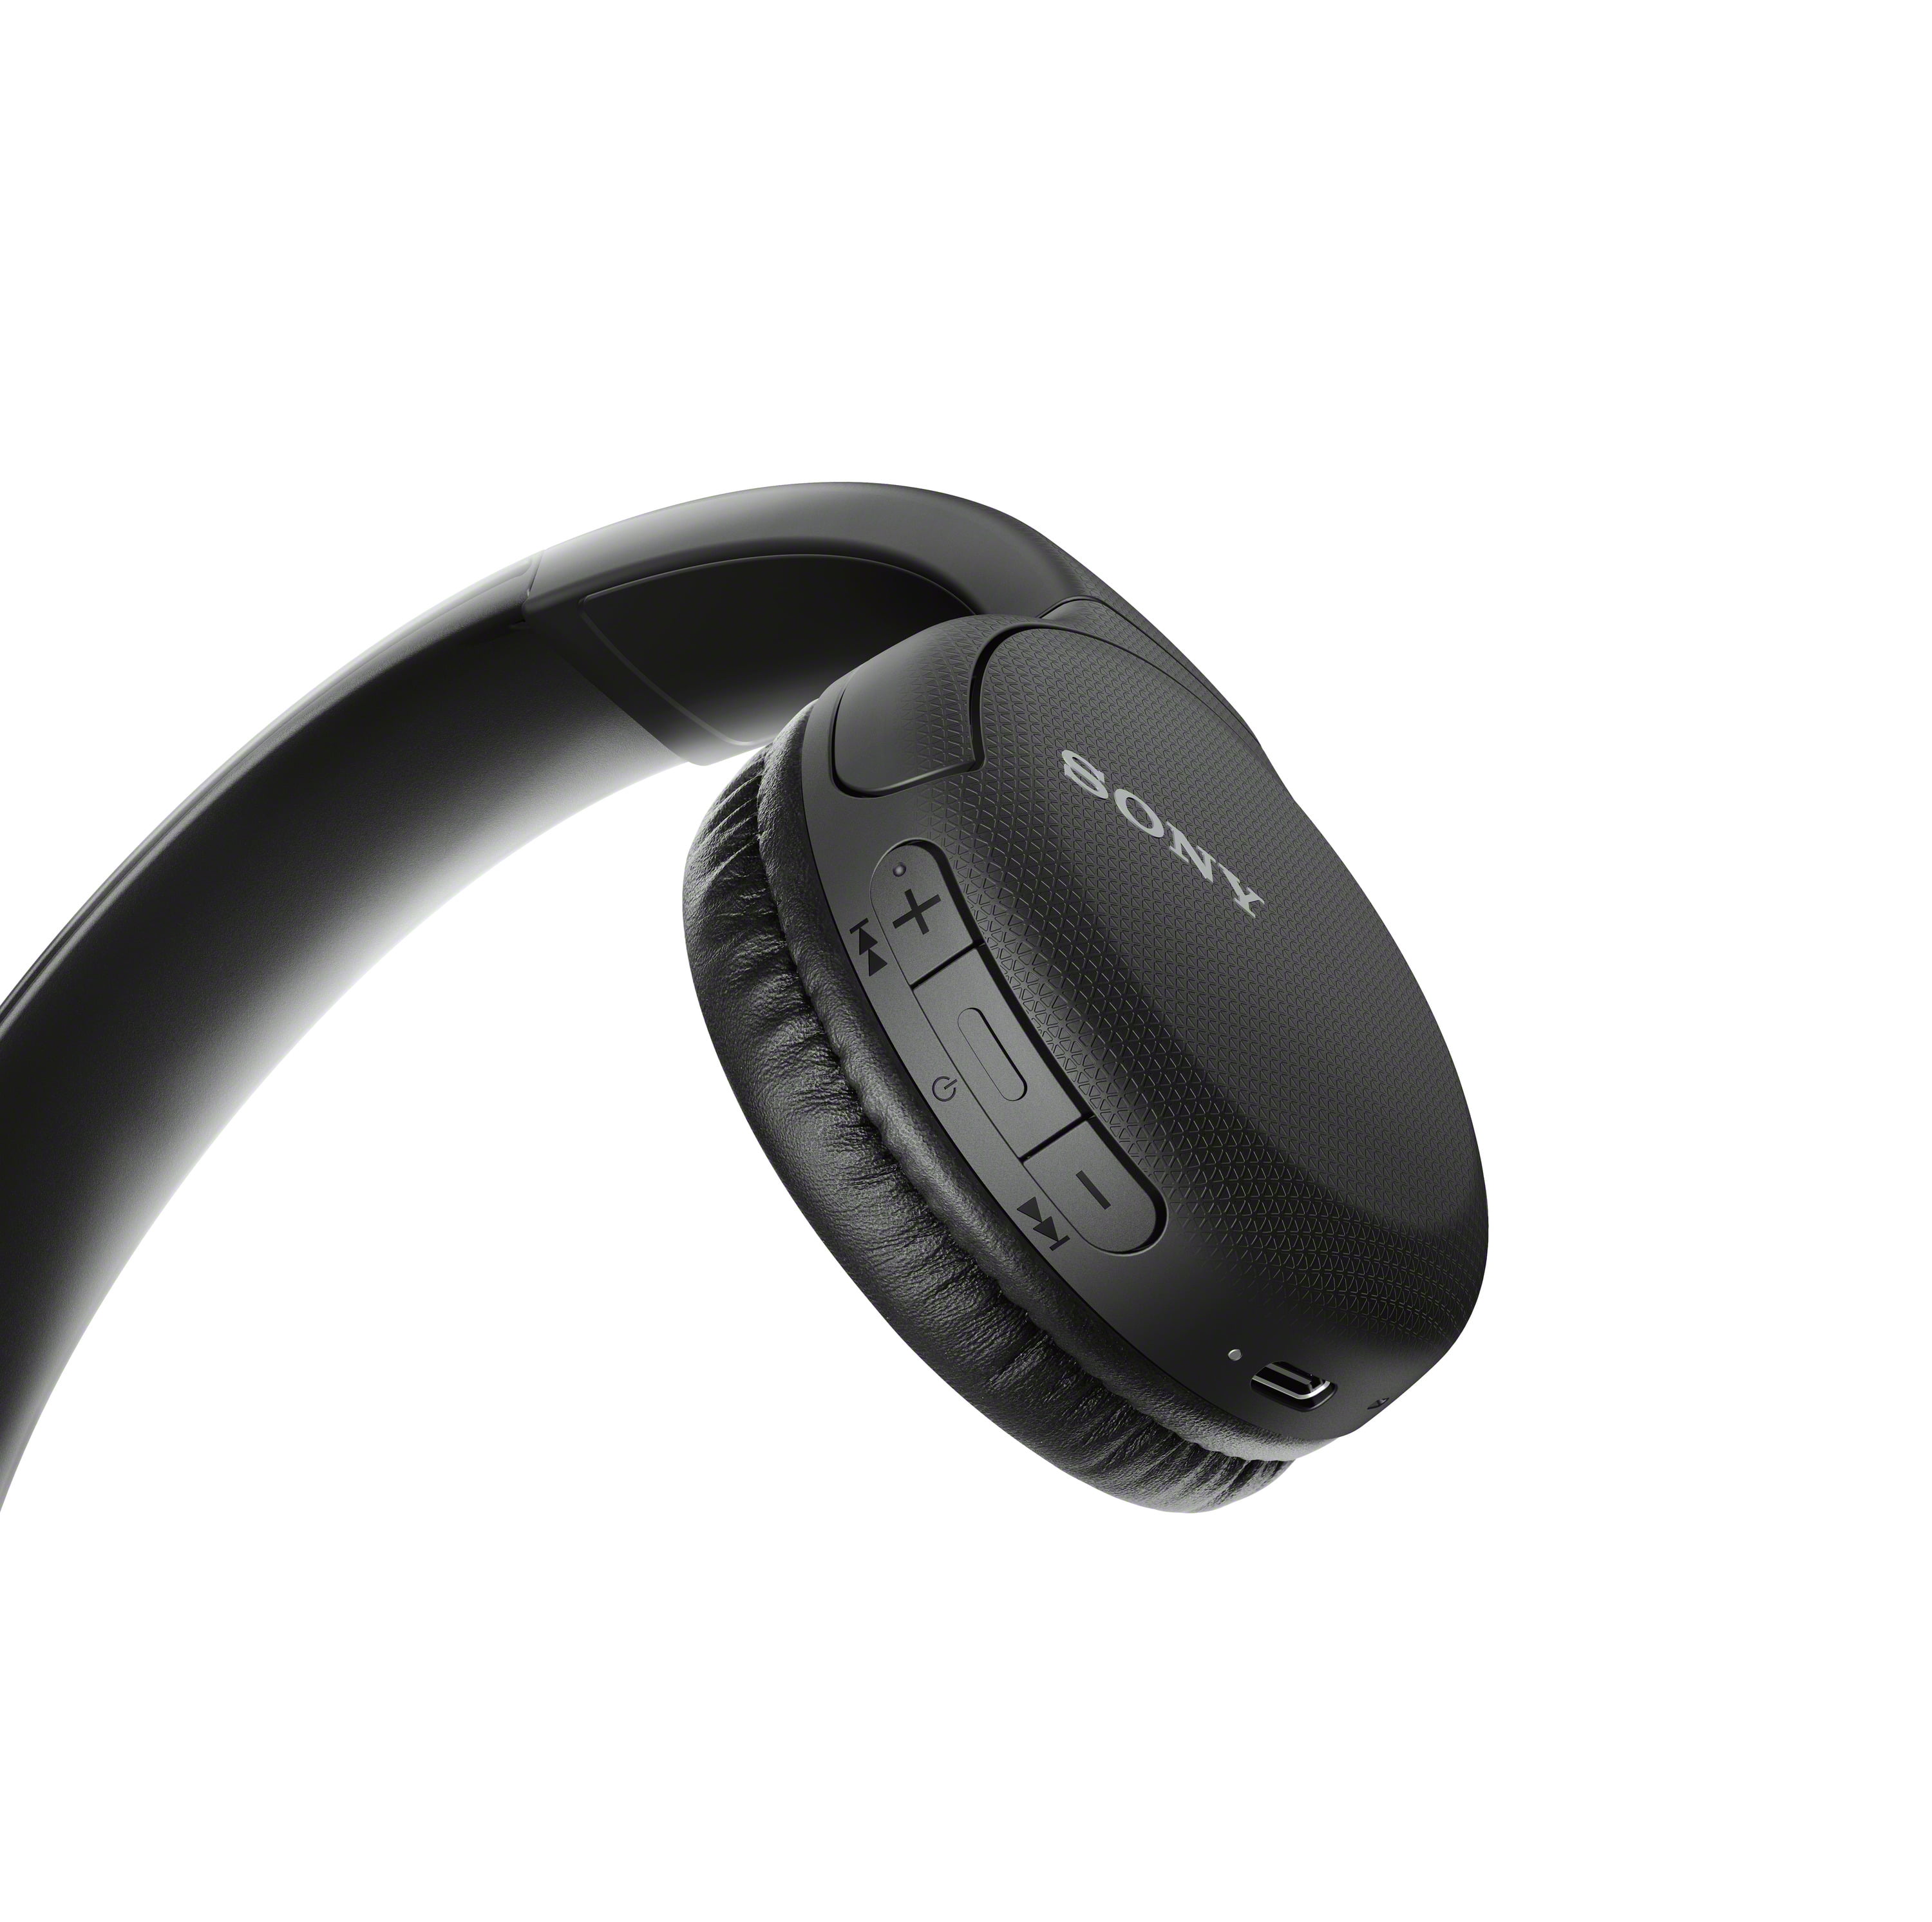 New Sony On-Ear Wireless Headphones in Black